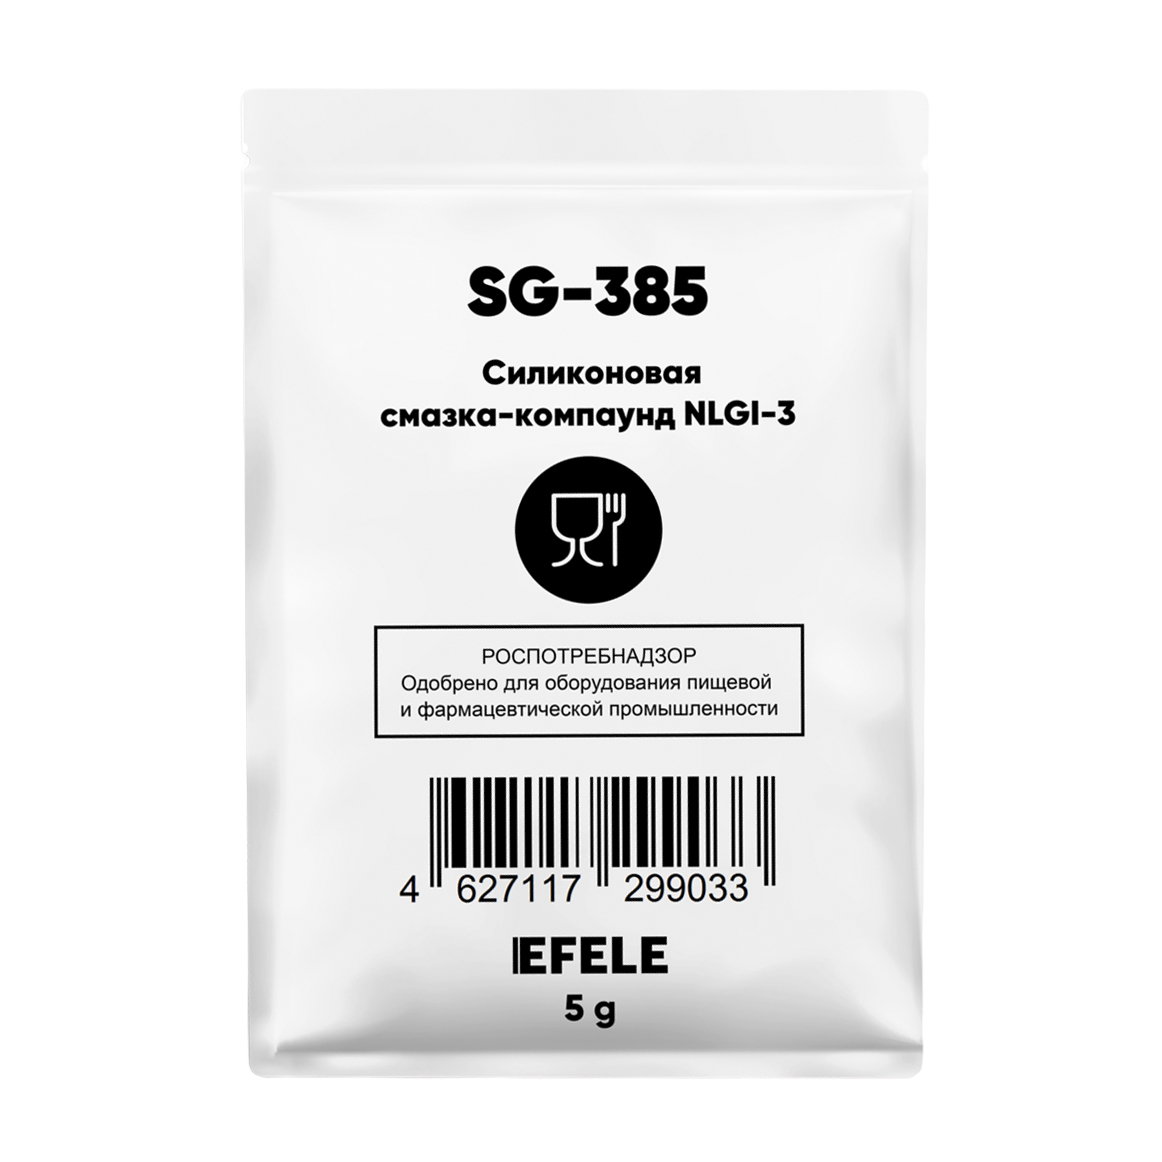 Силиконовая смазка-компаунд EFELE SG-385 для прокладок корпусов фильтров, пищевой допуск NSF H1, саше пакет 5 грамм